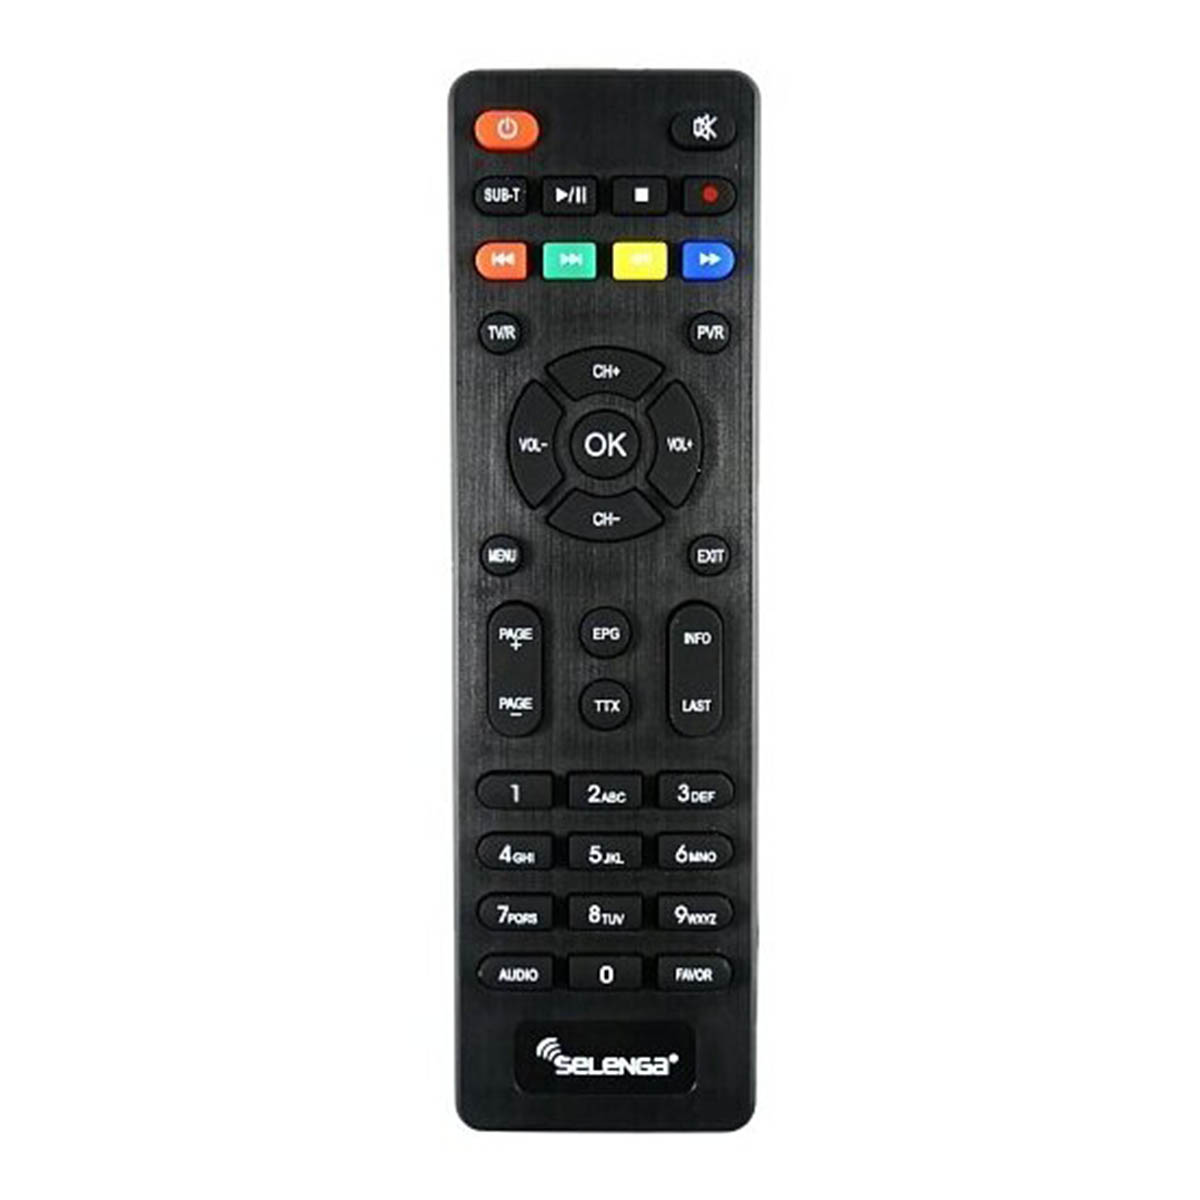 Цифровой эфирный приёмник, ТВ приставка SELENGA HD950D, DVB-T2, DVB-С, цвет черный